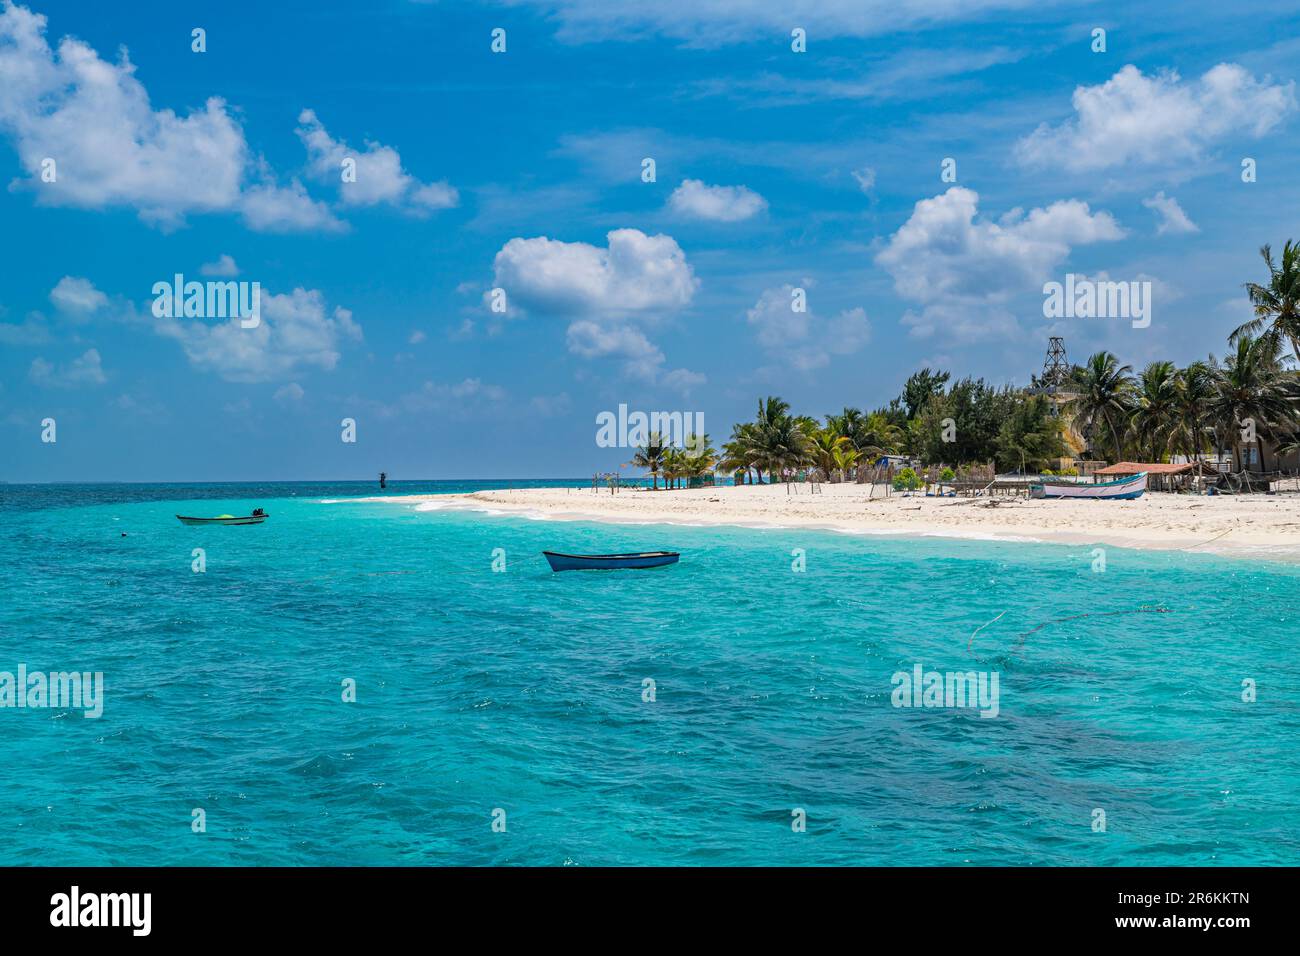 Spiaggia di sabbia bianca orlata di palme, isola di Agatti, arcipelago Lakshadweep, territorio dell'Unione dell'India, Oceano Indiano, Asia Foto Stock